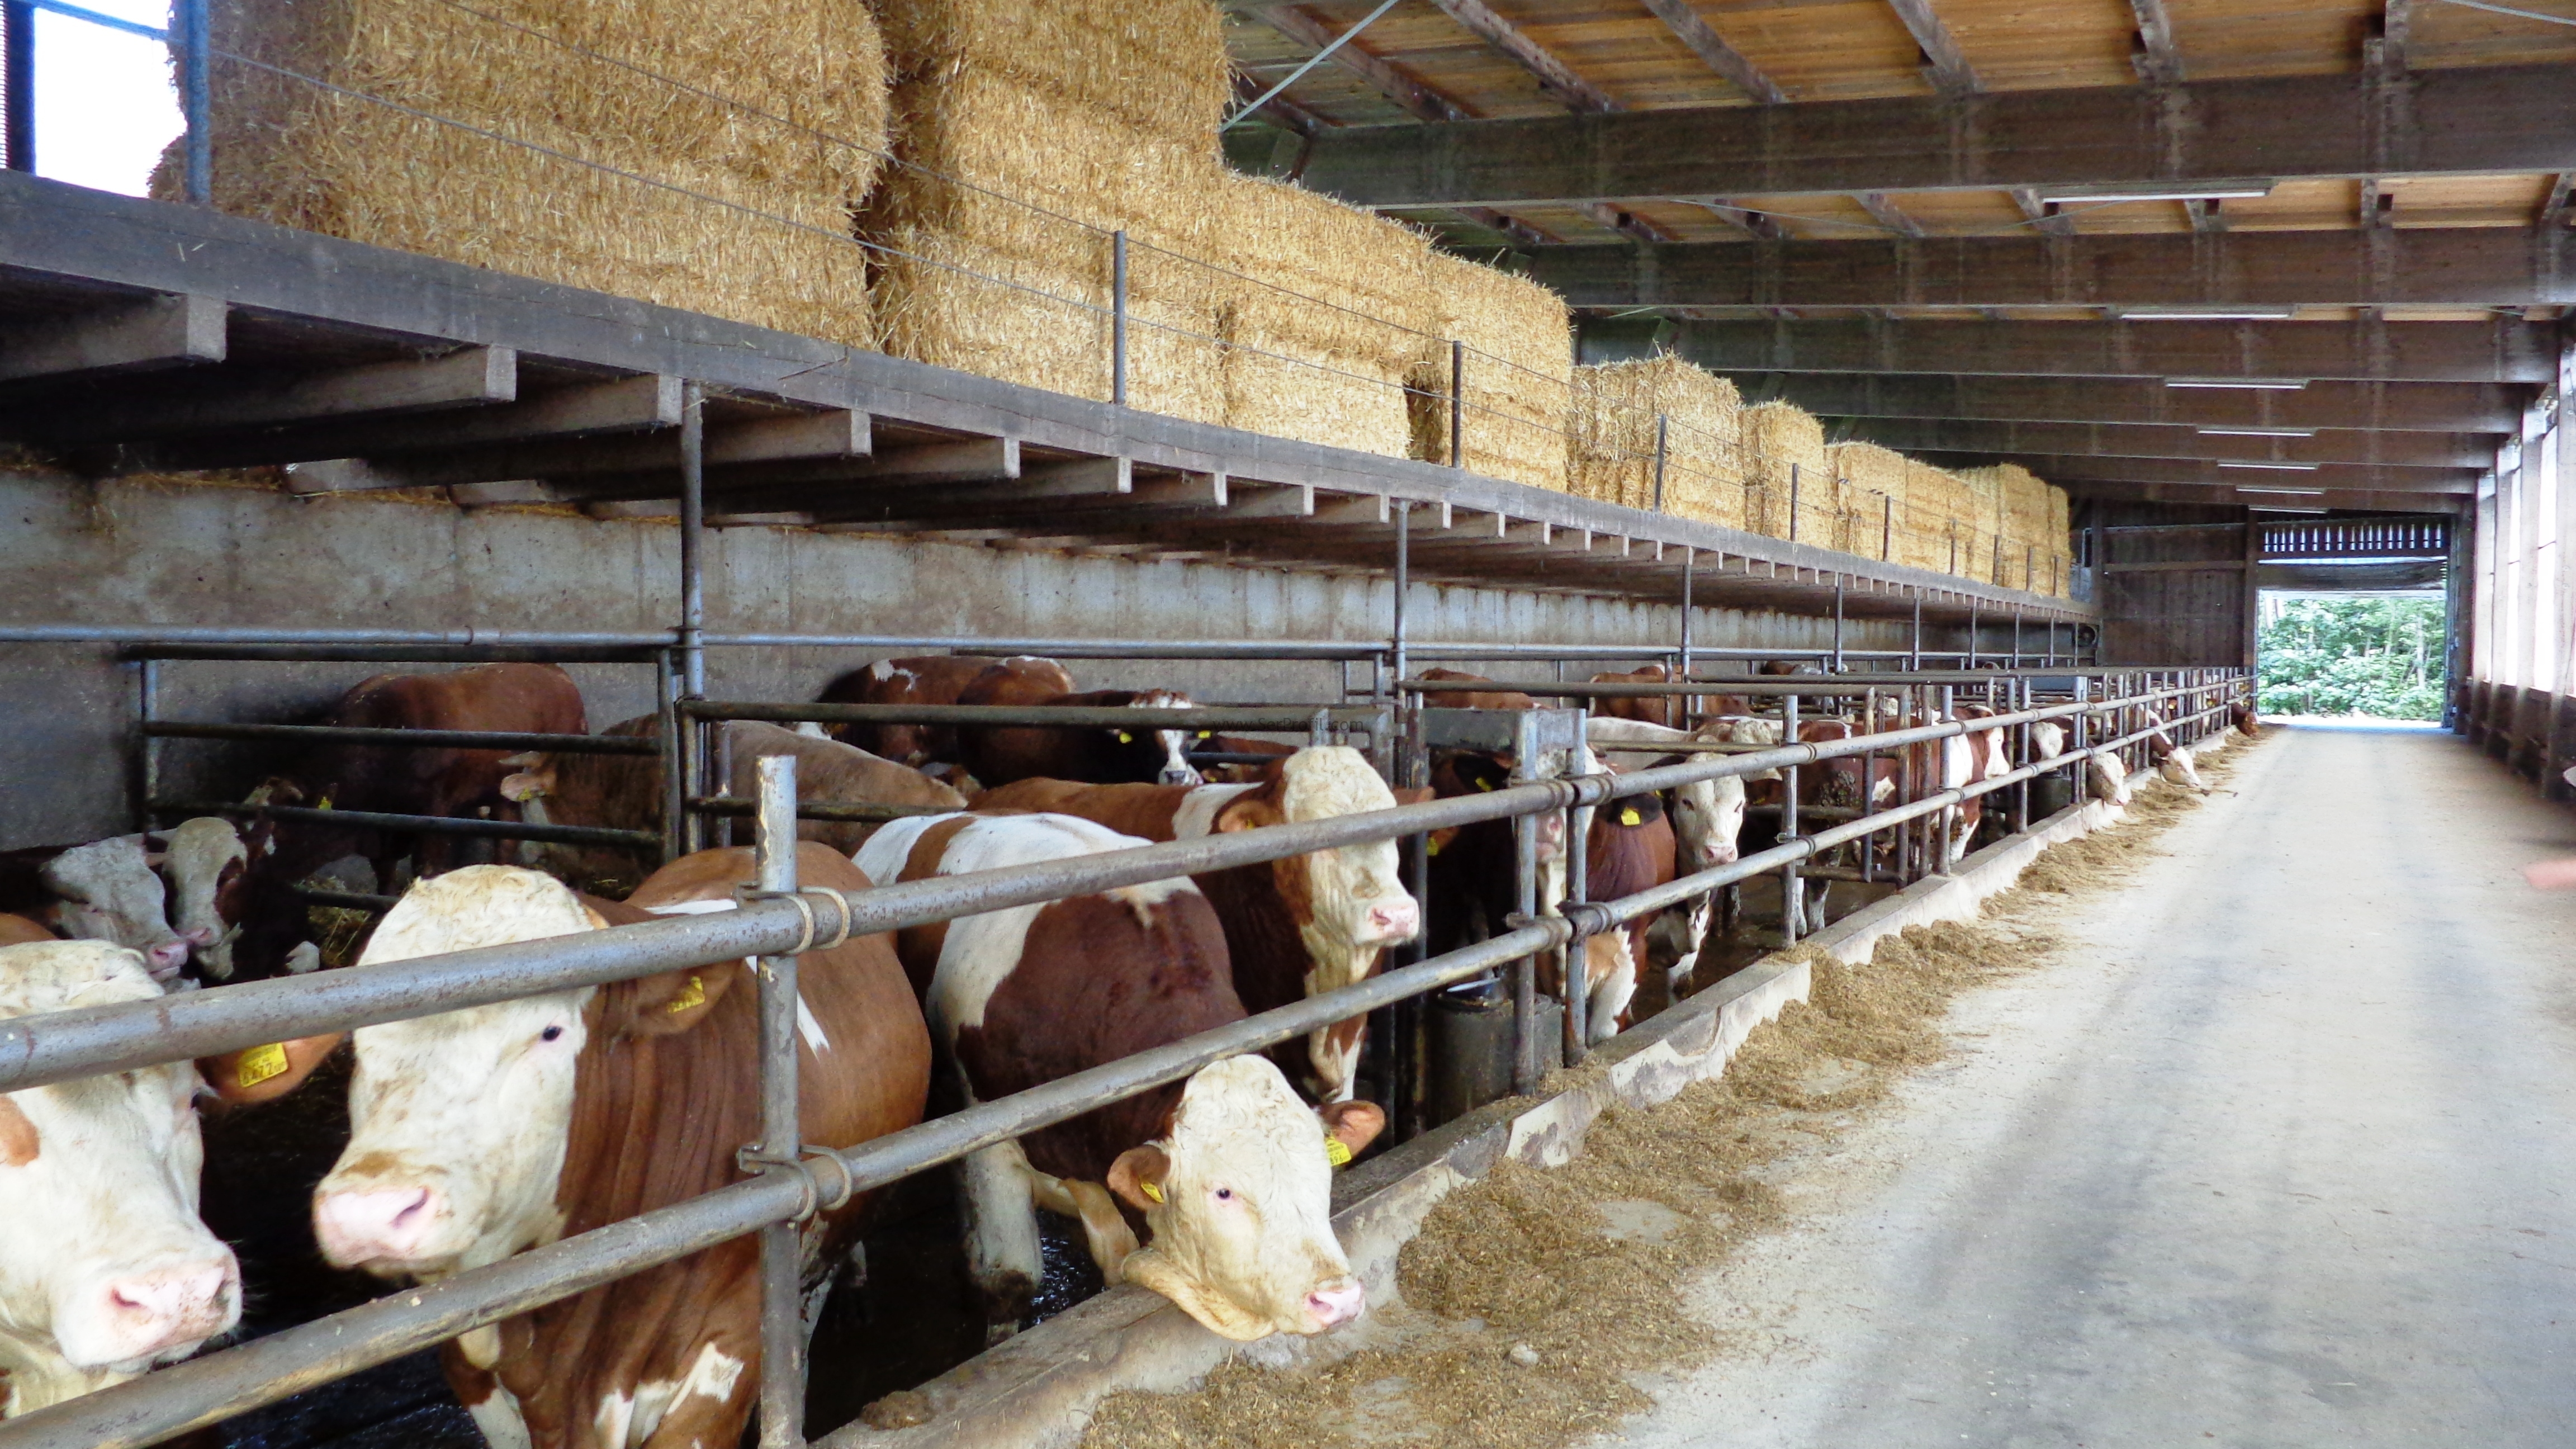 100 Başlık Süt Sığırcılığı Projesi İnşaat Yapım Kurulum Maliyeti Fiyatları 2017, 100 Başlık Süt Sığırcılığı Projesi İnşaat Yapım Kurulum Maliyeti 2017, 100 Başlık Süt Sığırcılığı Projesi İnşaat Yapım Kurulum Fiyatları 2017, 100 Başlık Süt Sığırcılığı Projesi İnşaat Yapım Maliyeti Fiyatları 2017, 100 Başlık Süt Sığırcılığı Projesi İnşaat Kurulum Maliyeti Fiyatları 2017, 100 Başlık Süt Sığırcılığı Projesi Yapım Kurulum Maliyeti Fiyatları 2017, Süt Sığırcılığı İnşaat Yapım Kurulum Maliyeti Fiyatları 2017, Süt Sığırcılığı Projesi İnşaat Kurulum Maliyeti Fiyatları 2017,   süt çiftliği kurulum maliyeti, 50 başlık süt sığırcılığı projesi maliyeti, 100 başlık süt sığırcılığı projesi maliyeti, 10 başlık süt sığırcılığı projesi maliyeti, 20 başlık ahır maliyeti, 100 başlık süt sığırcılığı projesi maliyeti 2017, 30 başlık ahır maliyeti, büyükbaş hayvan çiftliği devlet desteği, büyükbaş hayvan çiftliği satılık,